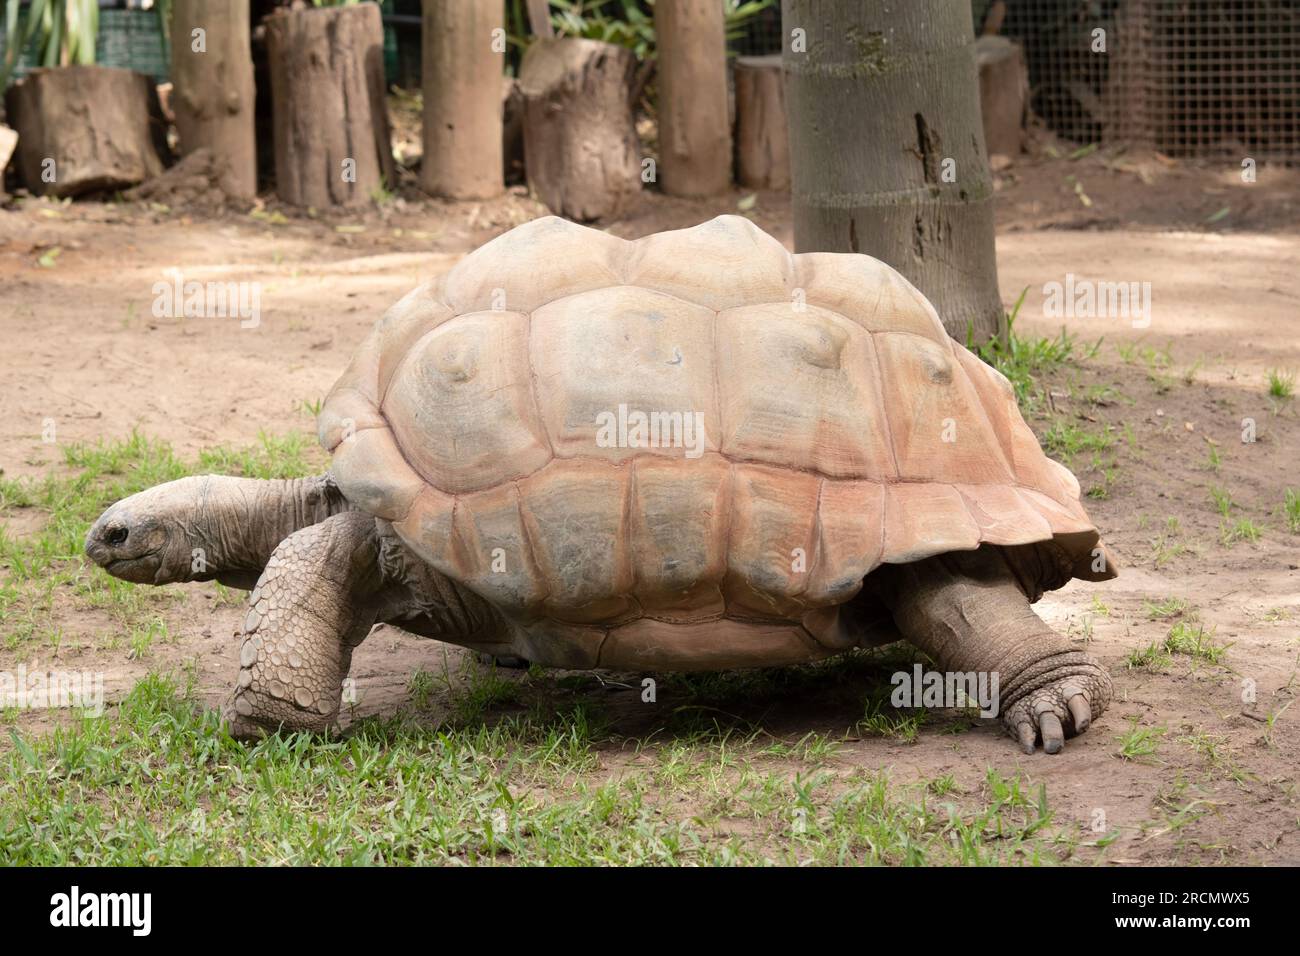 Les tortues géantes Aldabra sont principalement actives tôt le matin et tard dans la soirée et passent le reste de la journée dans des terriers ou nageaient Banque D'Images